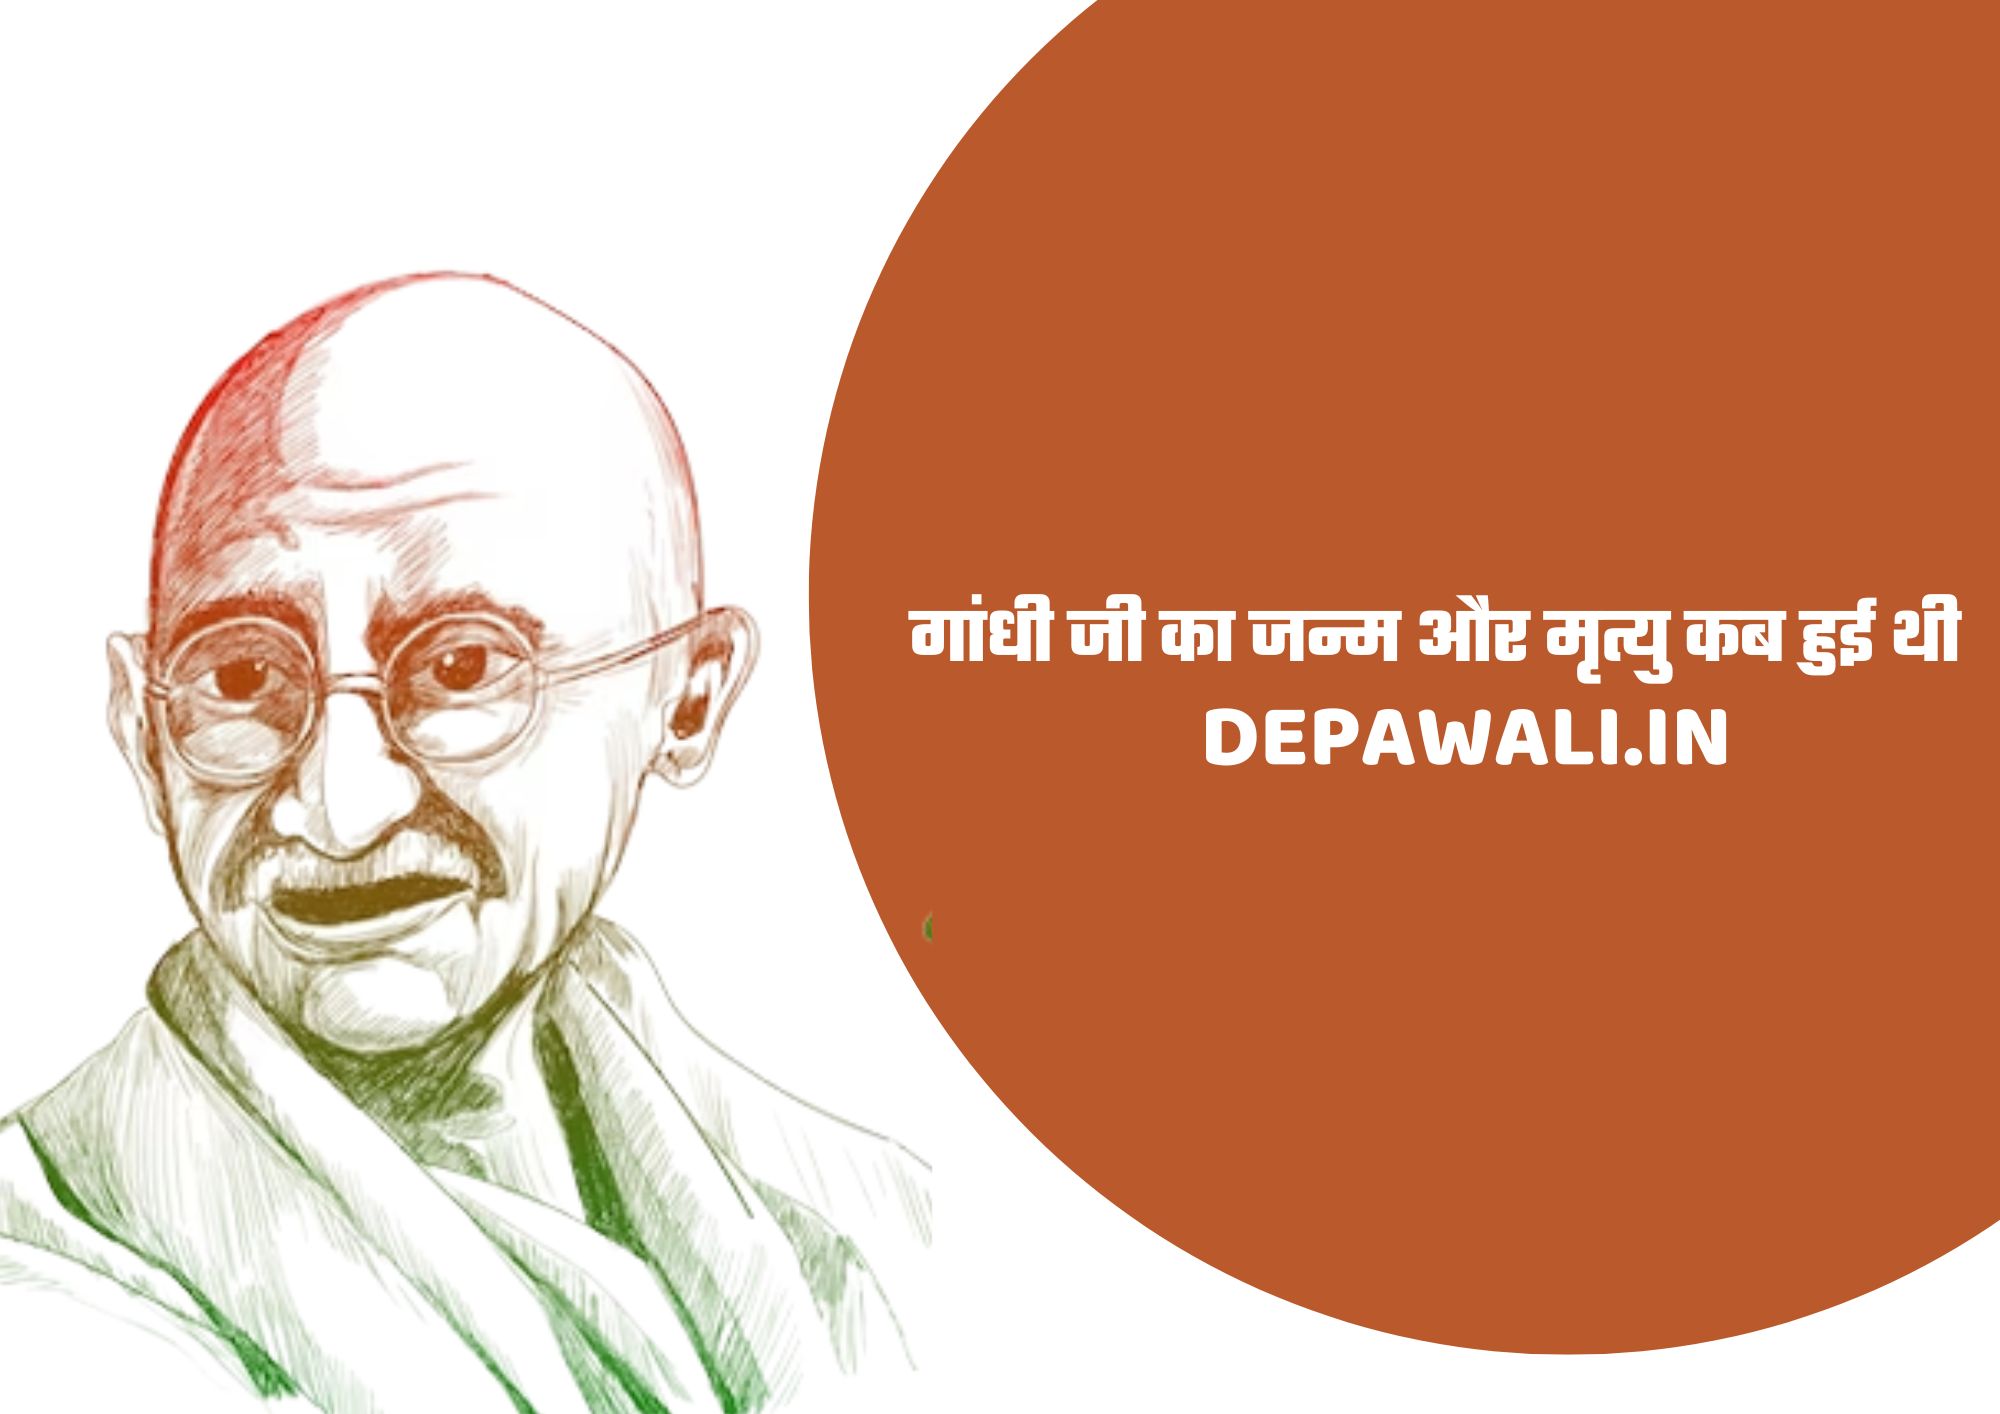 गांधी जी का जन्म और मृत्यु कब हुई थी, महात्मा गांधी का जीवन परिचय - Mahatma Gandhi Biography In Hindi - About Mahatma Gandhi In Hindi